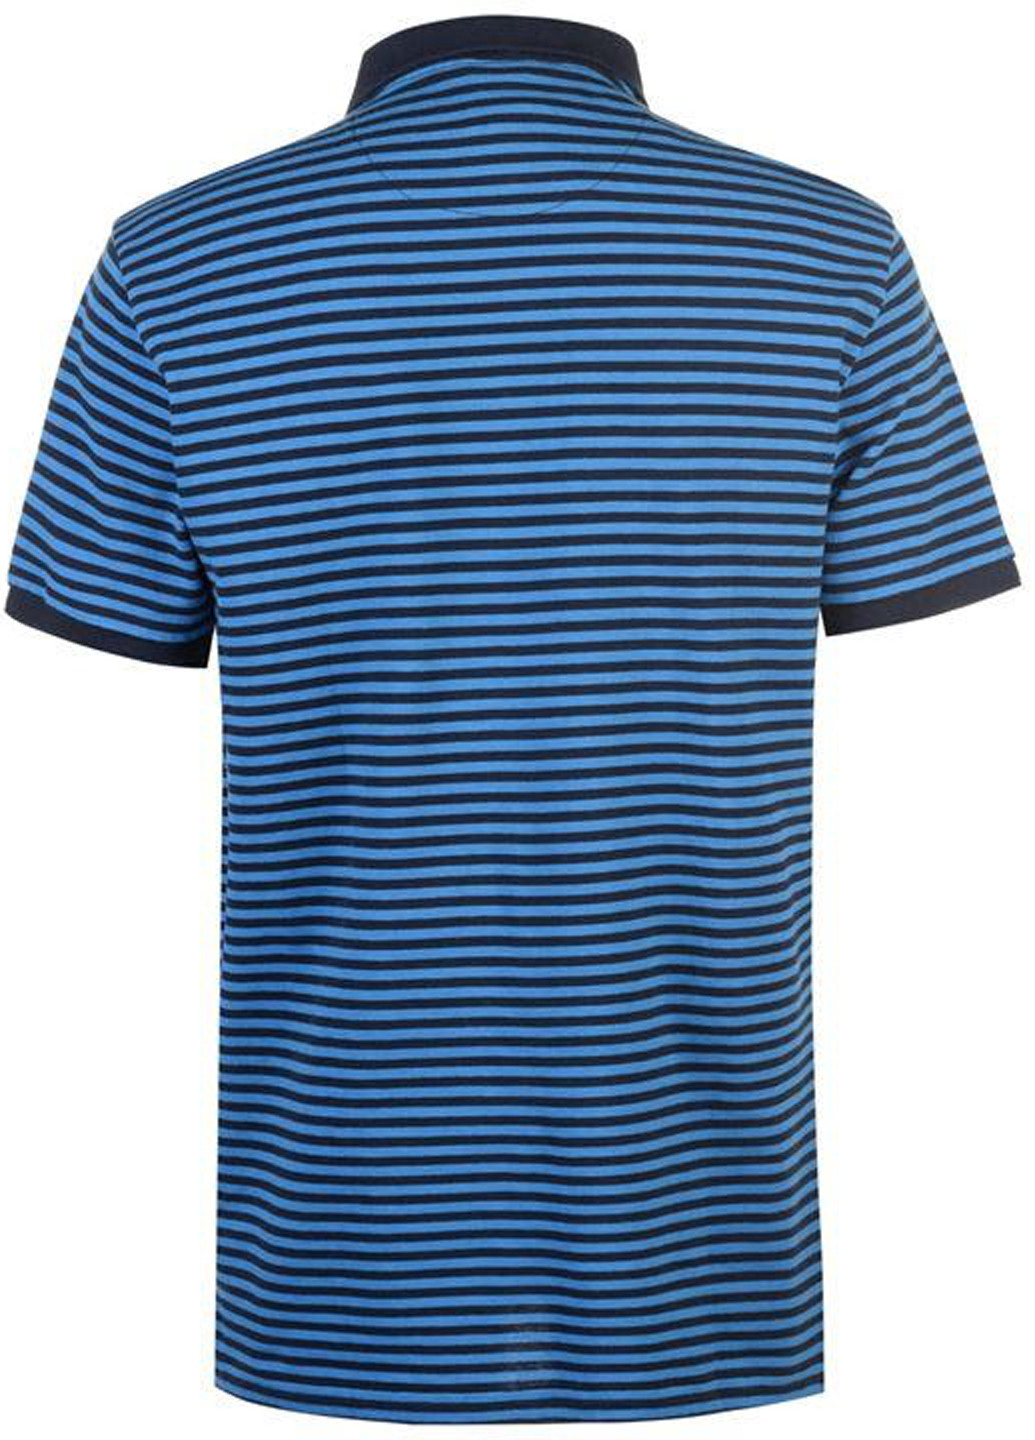 Синяя футболка-поло для мужчин Kangol в полоску